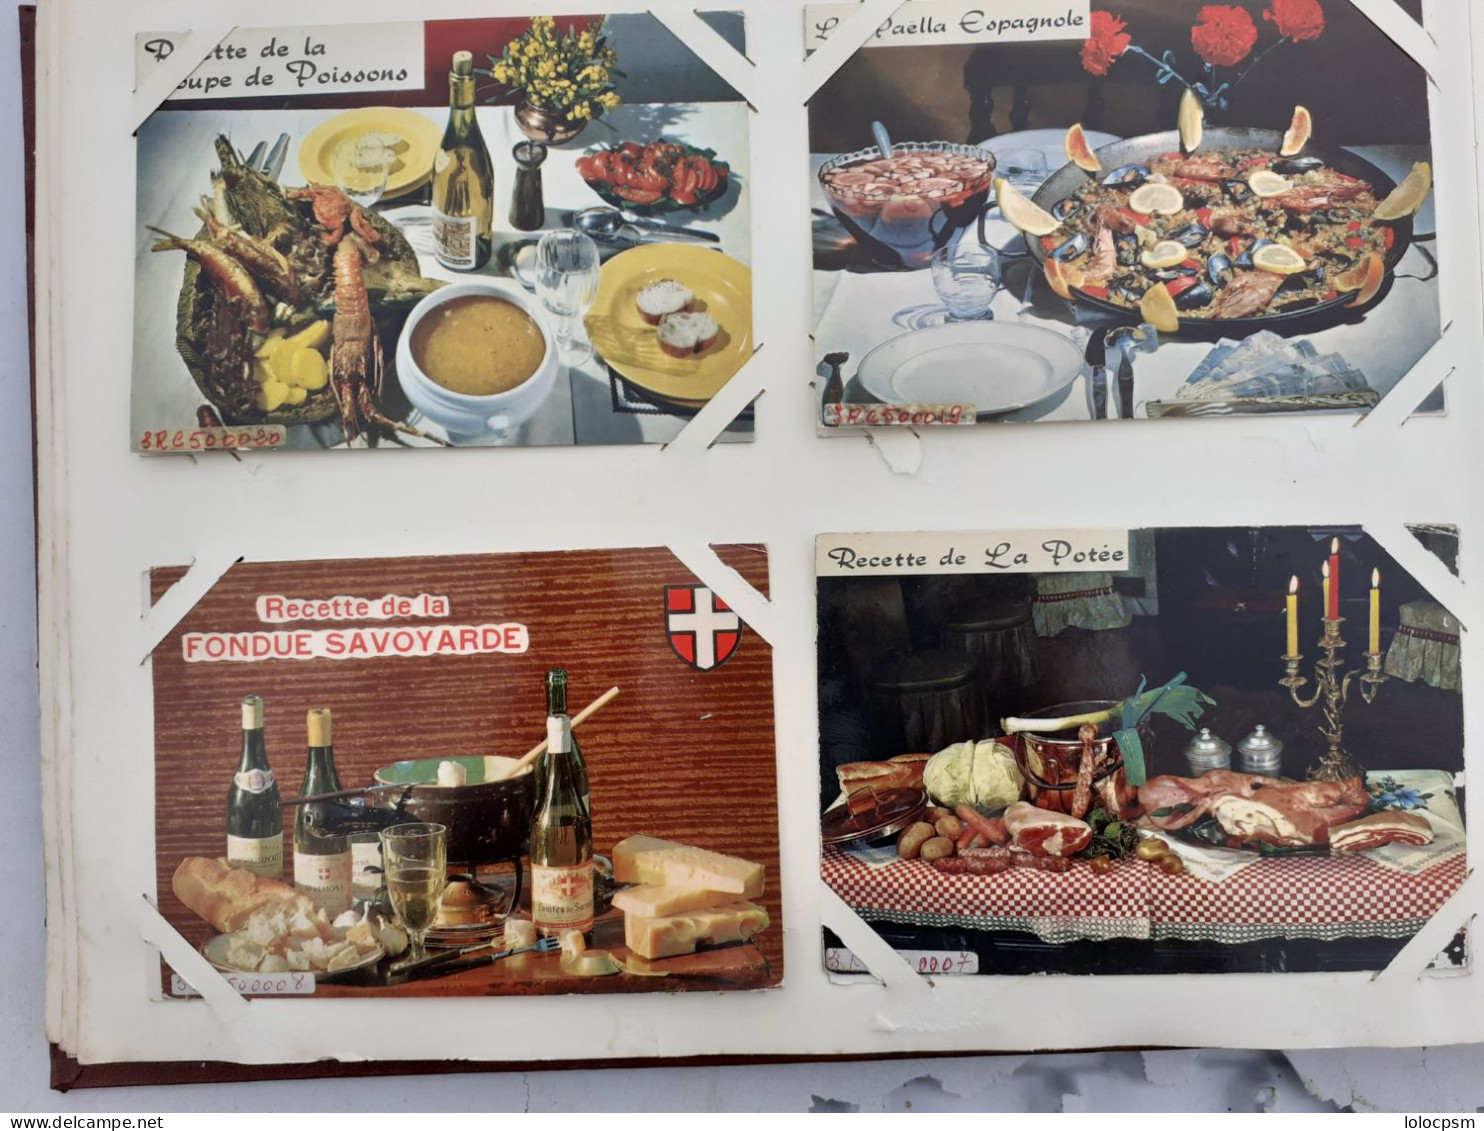 album de recettes de cuisine -250 cartes postales--voir photos